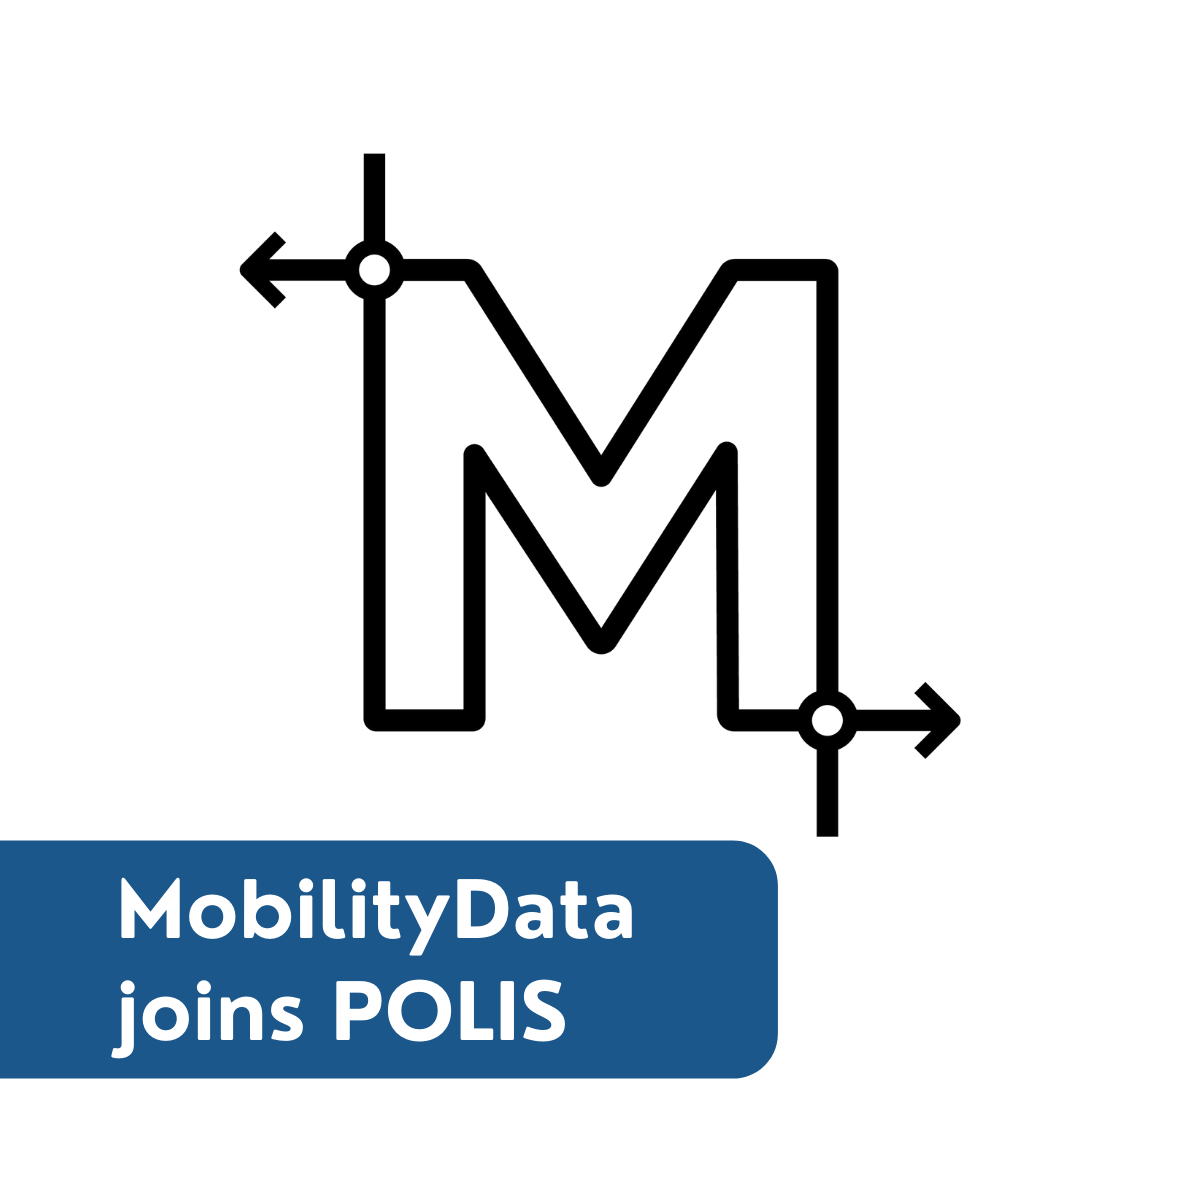 MobilityData joins POLIS!